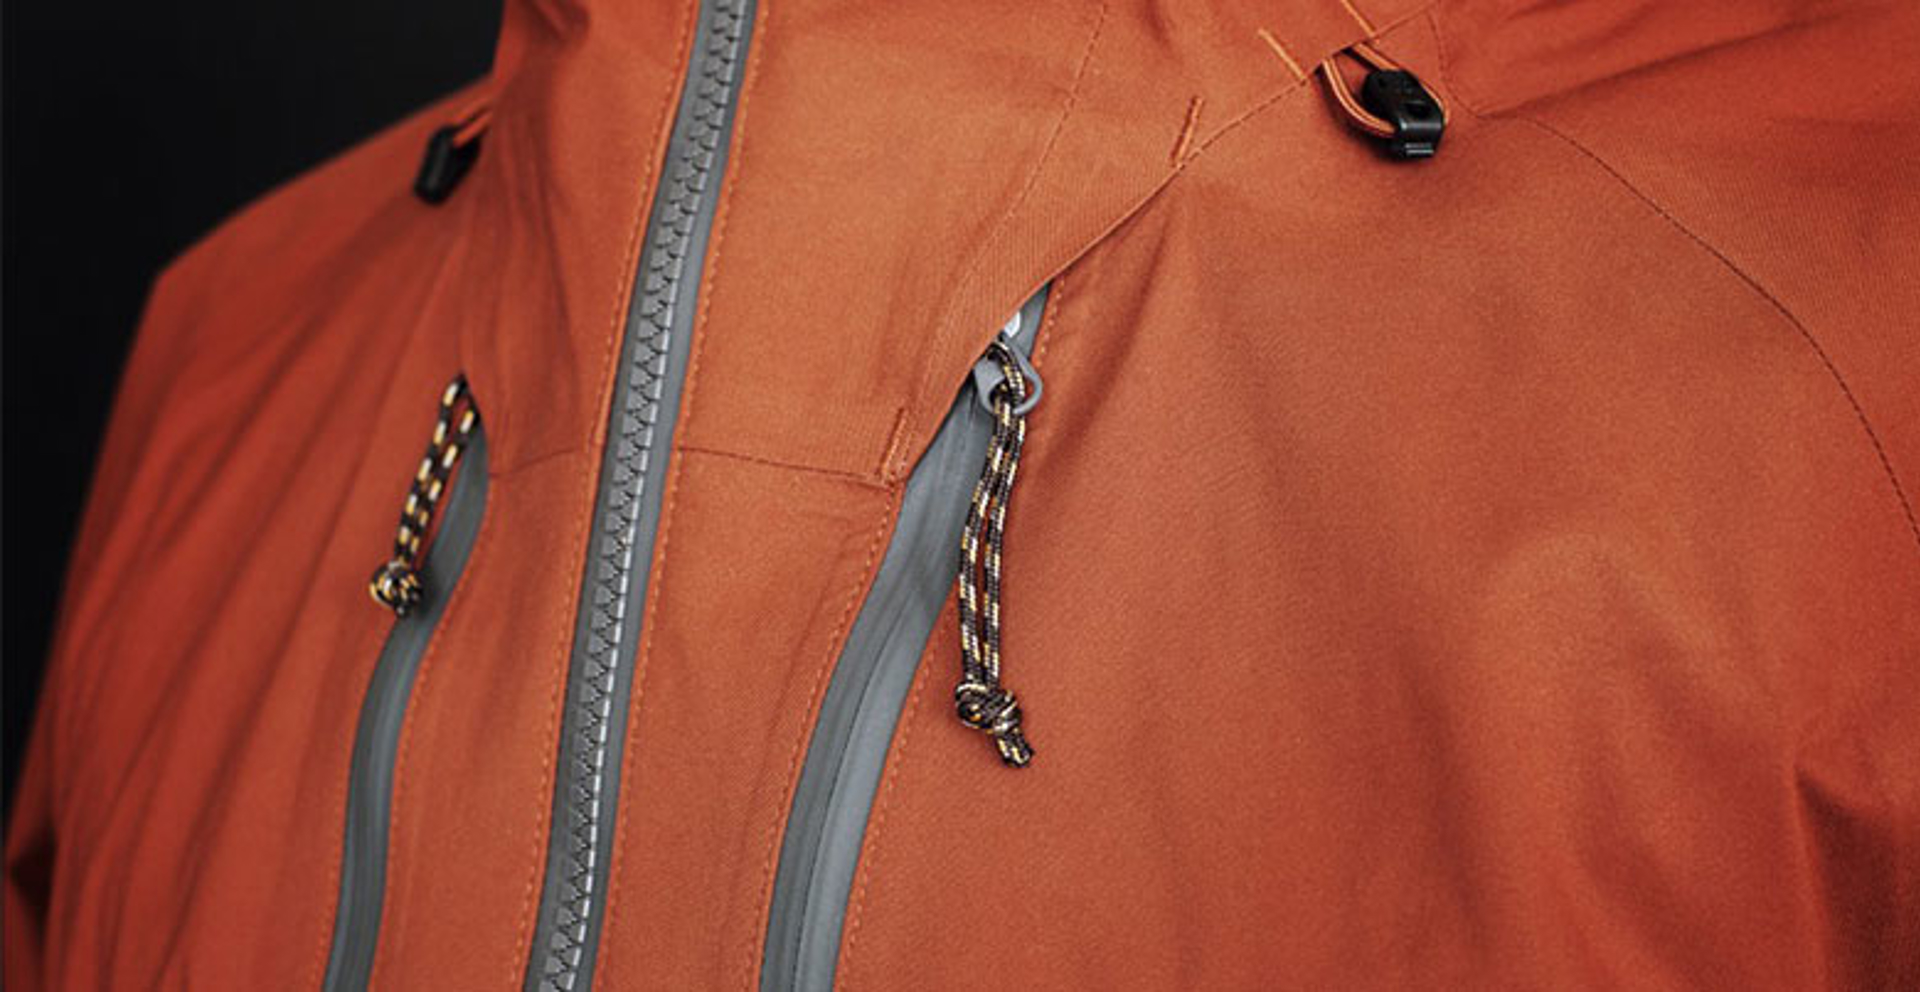 Closeup of jacket zippers